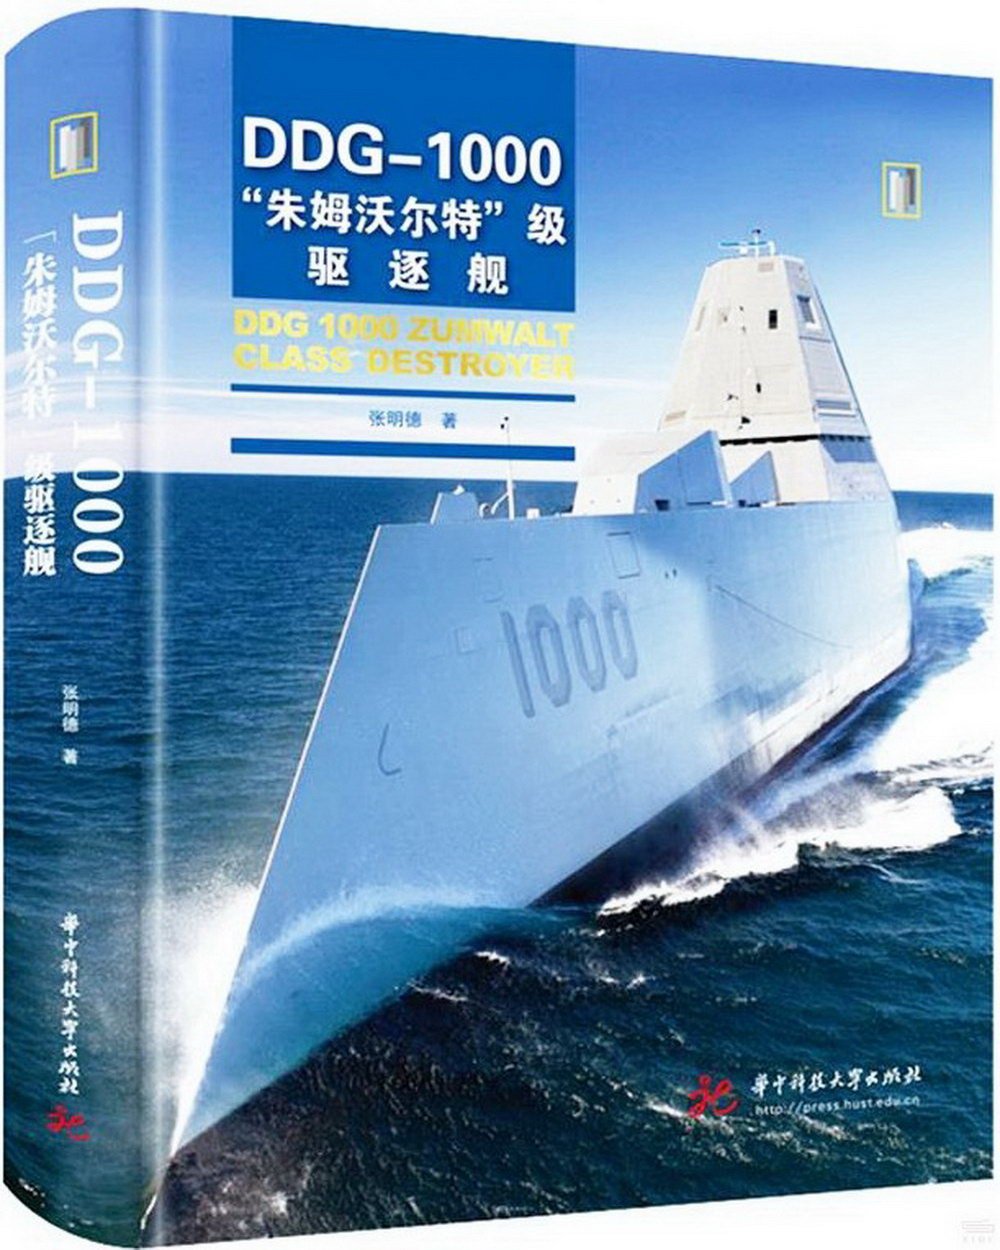 DDG-1000“朱姆沃爾特”級驅逐艦